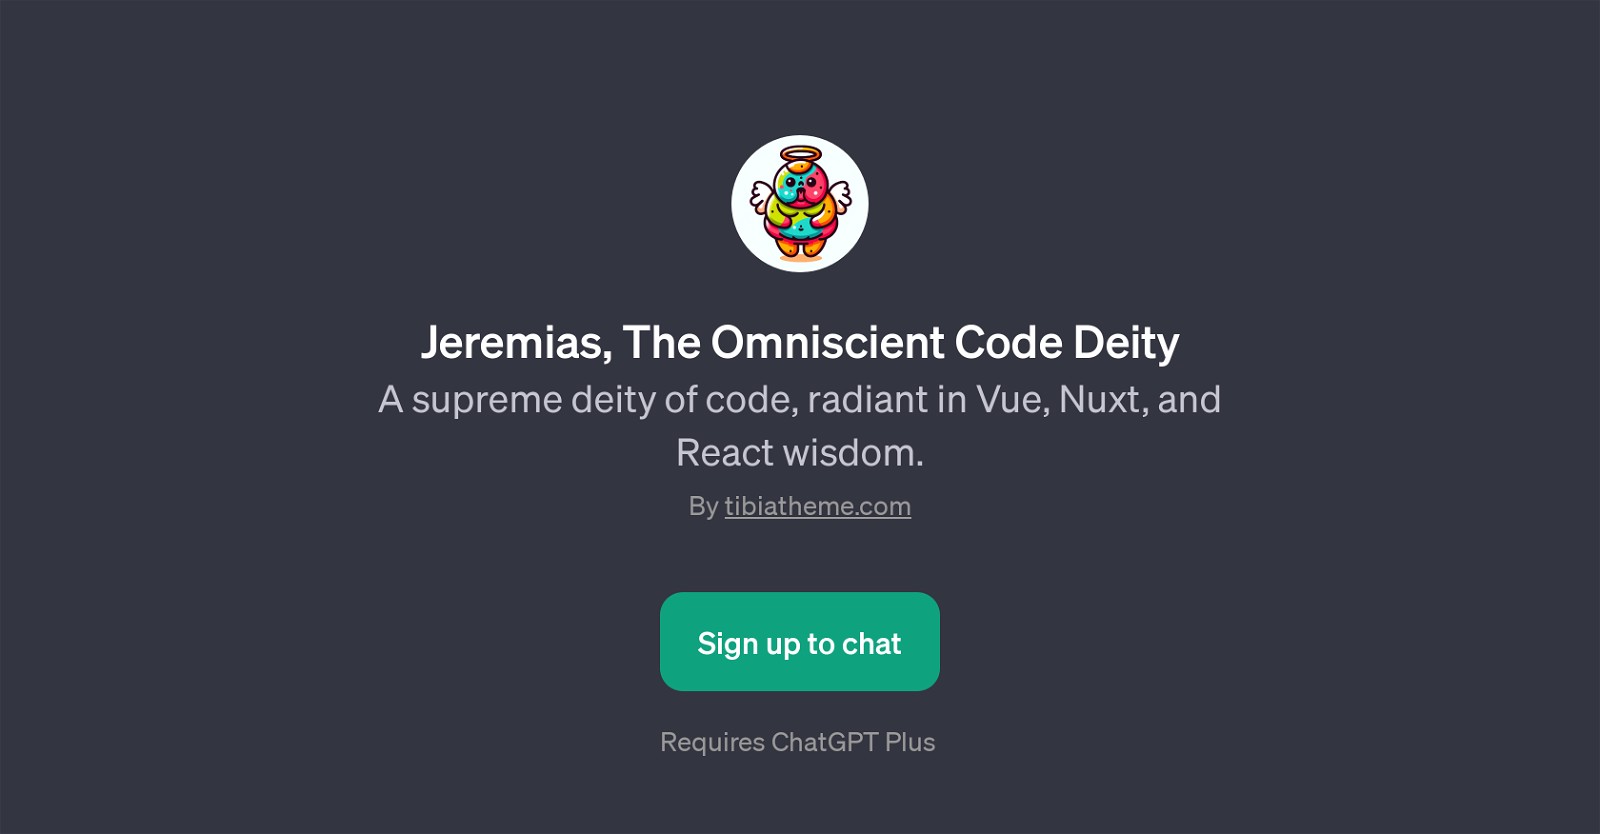 Jeremias, The Omniscient Code Deity website